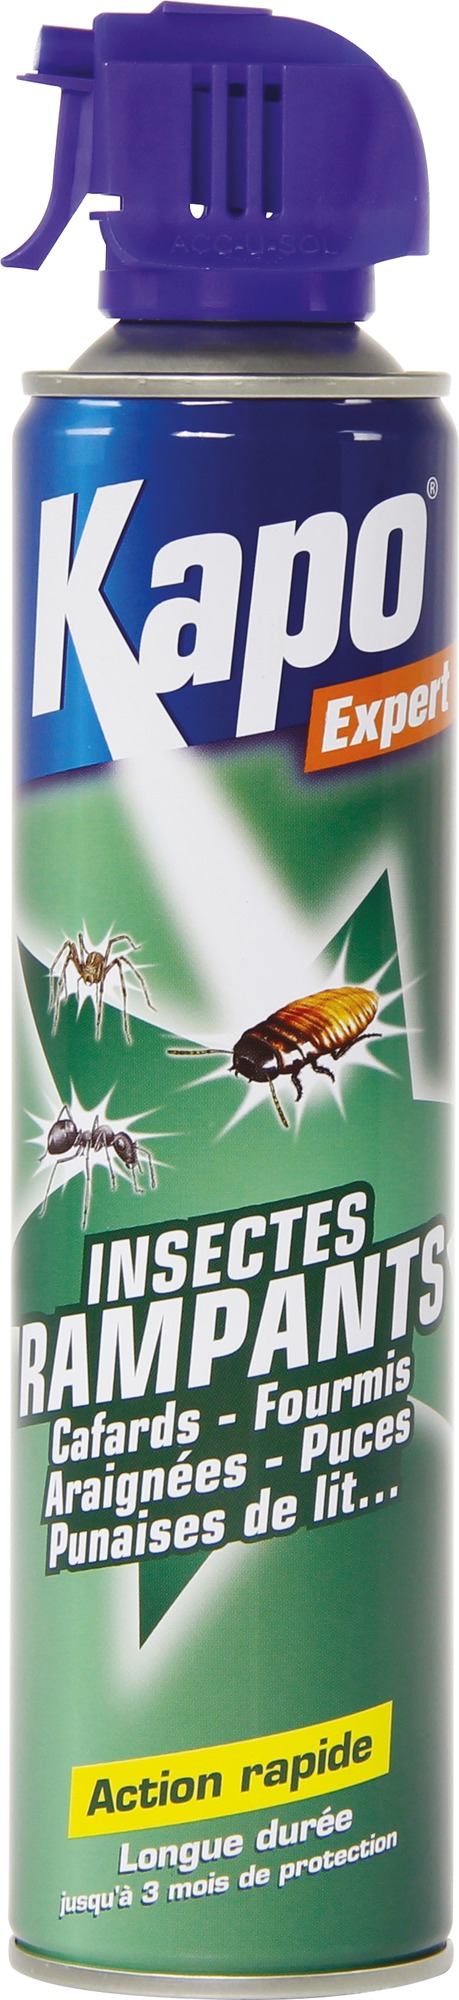 Tous insectes rampants Kapo Expert - Action rapide - Aérosol 400 ml